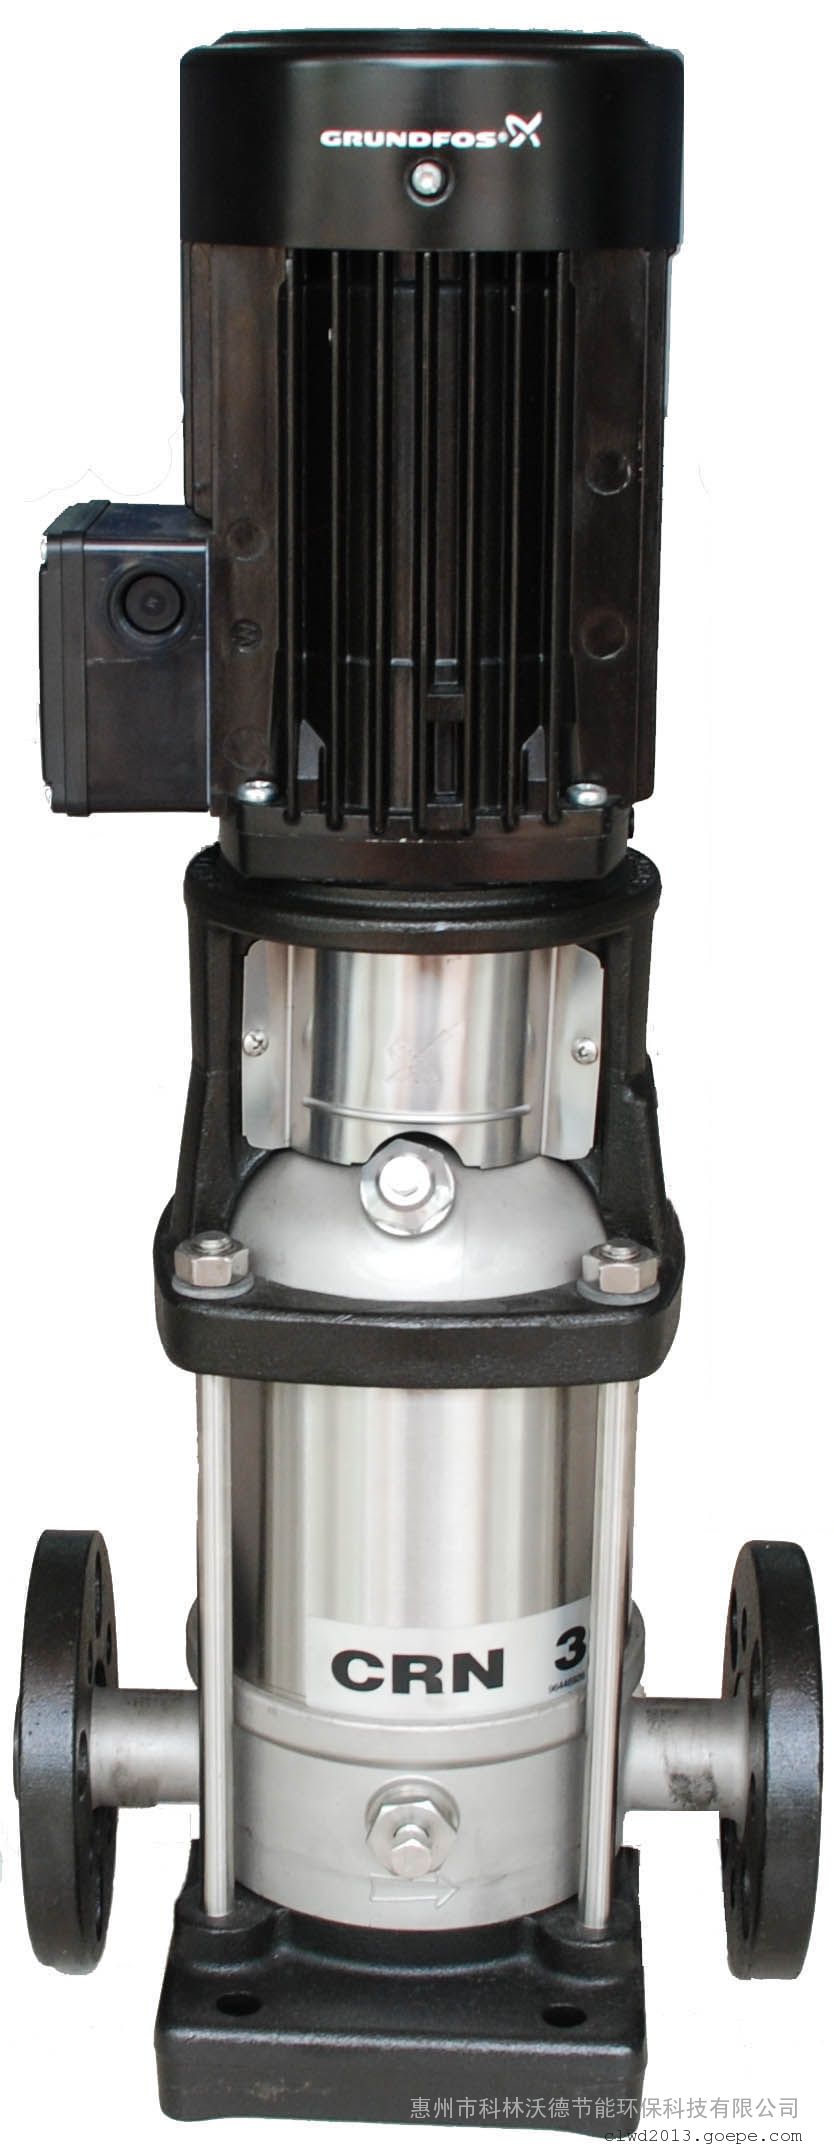 GRUNDFOS格兰富立式多级离心泵CR(E)15-7